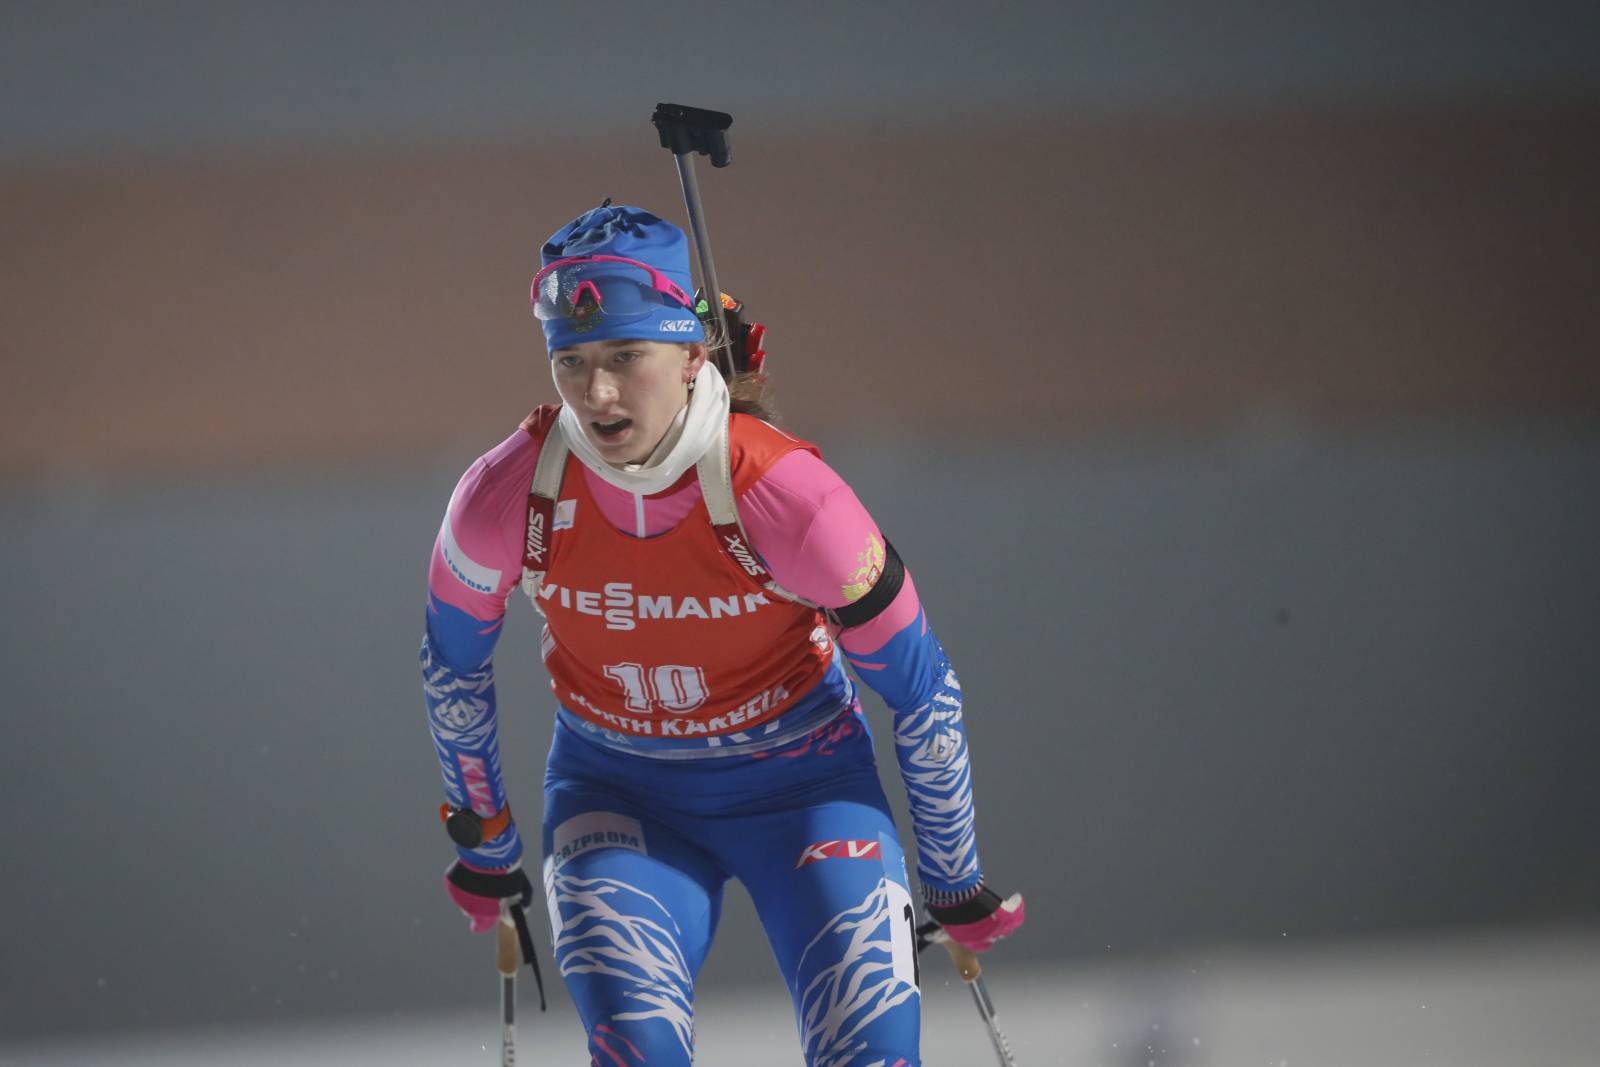 Без шансов на медали: Казакевич финишировала 24-й в масс-старте, победила норвежка Ройселанн